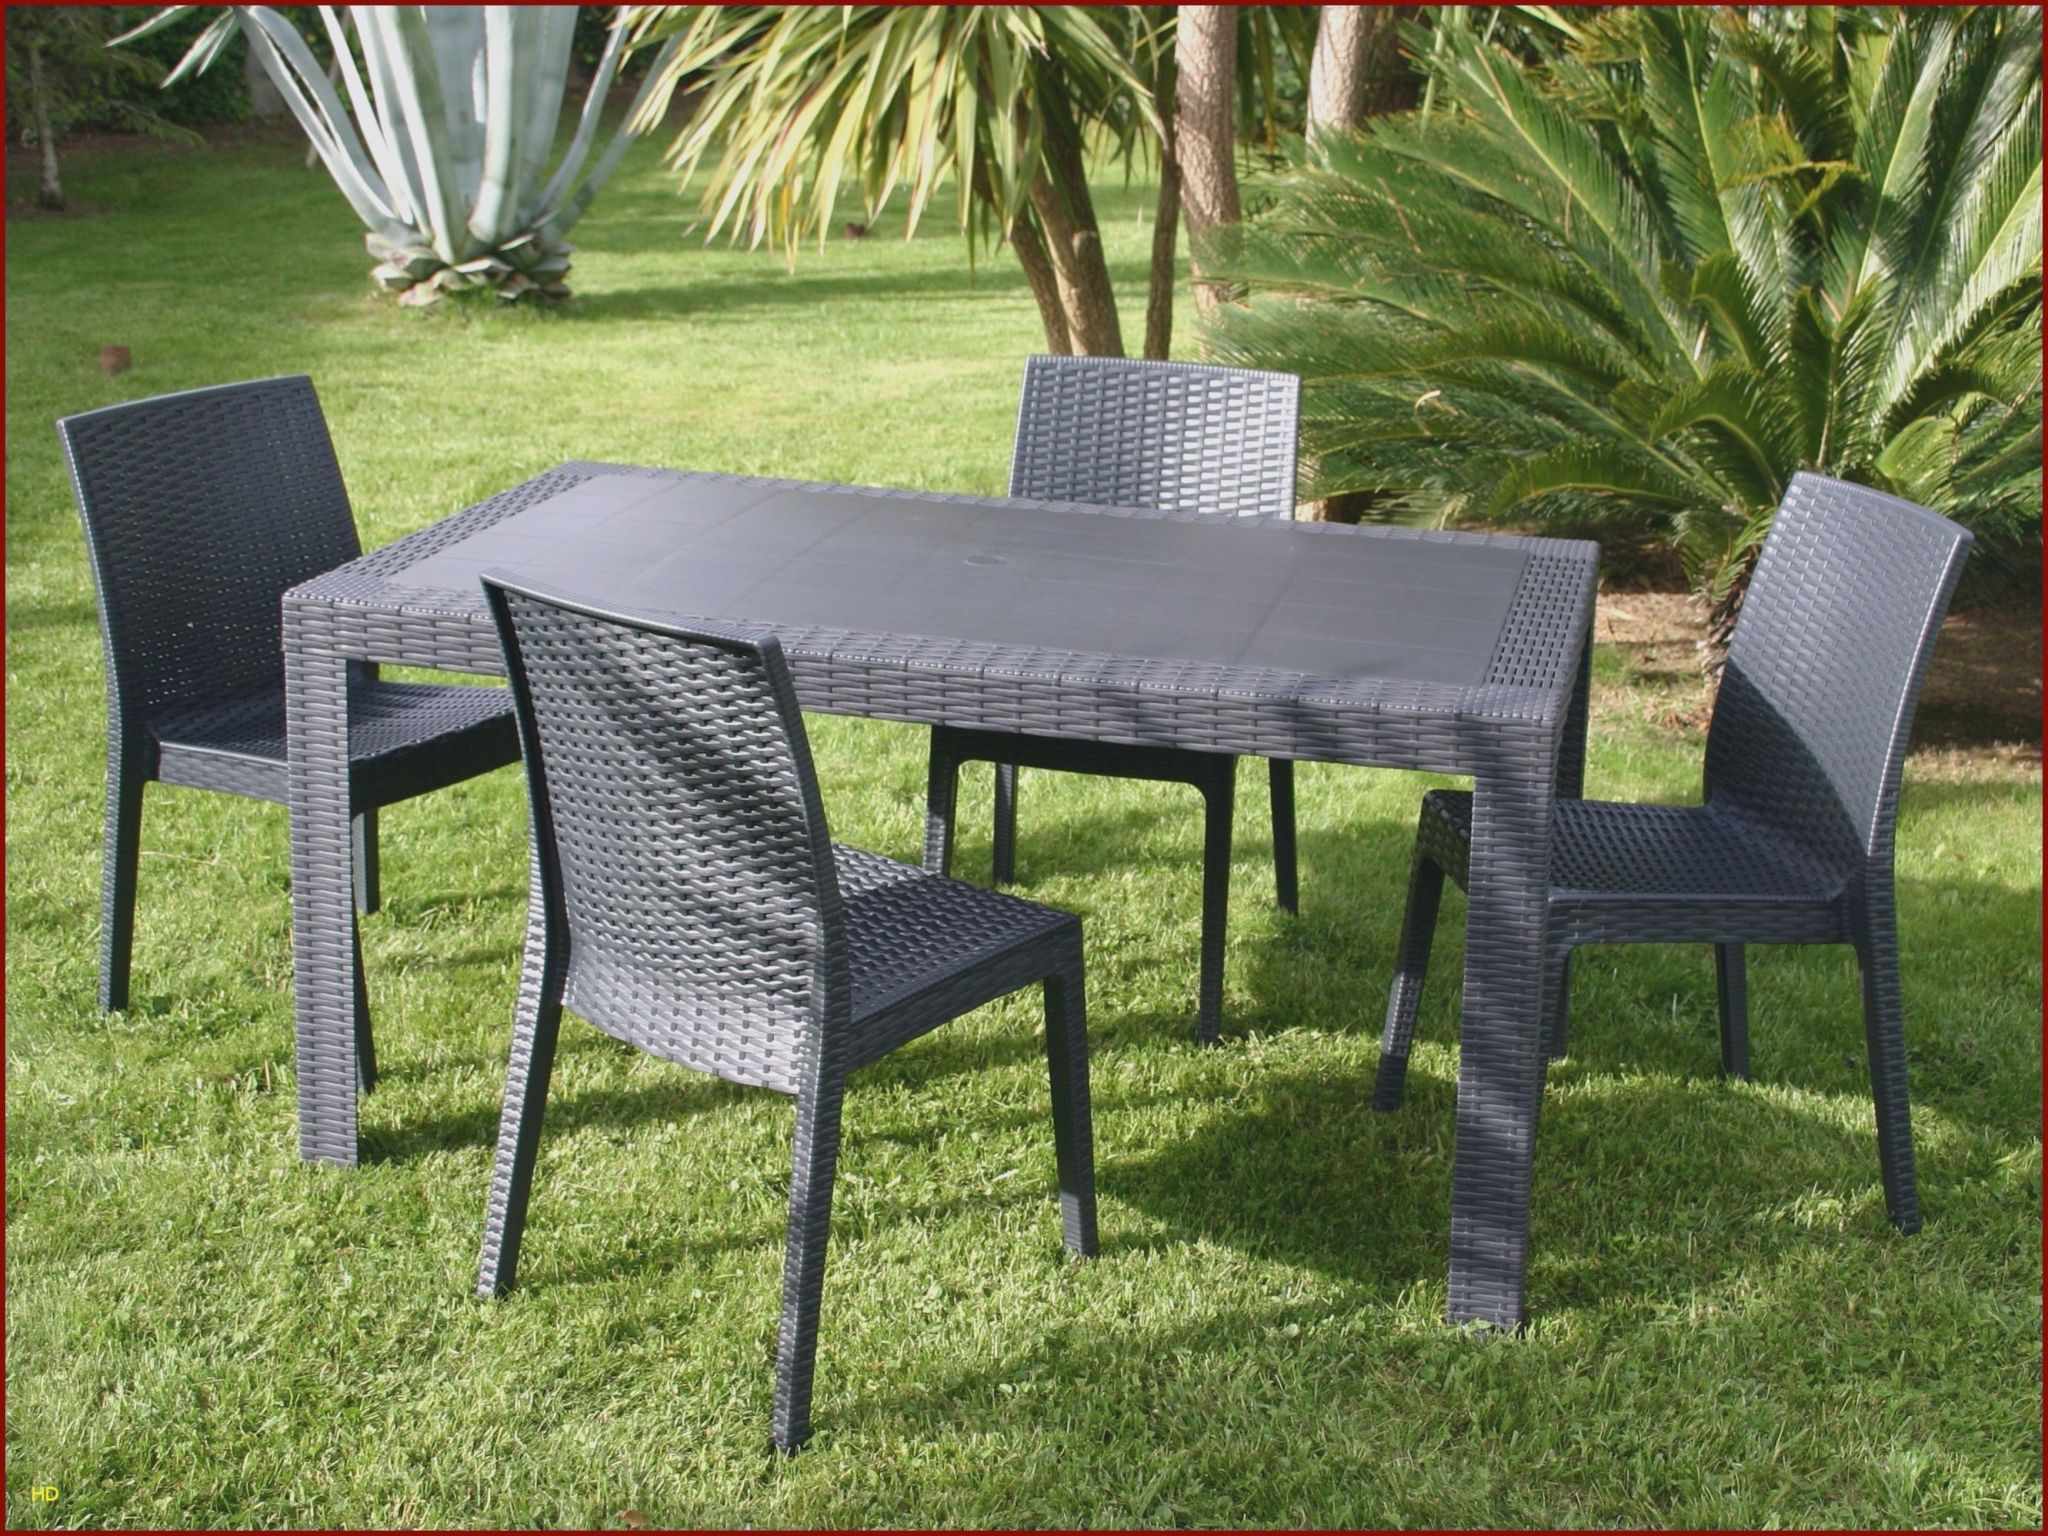 Table Exterieur Aluminium Génial Chaises Luxe Chaise Ice 0d Table Jardin Resine Lovely